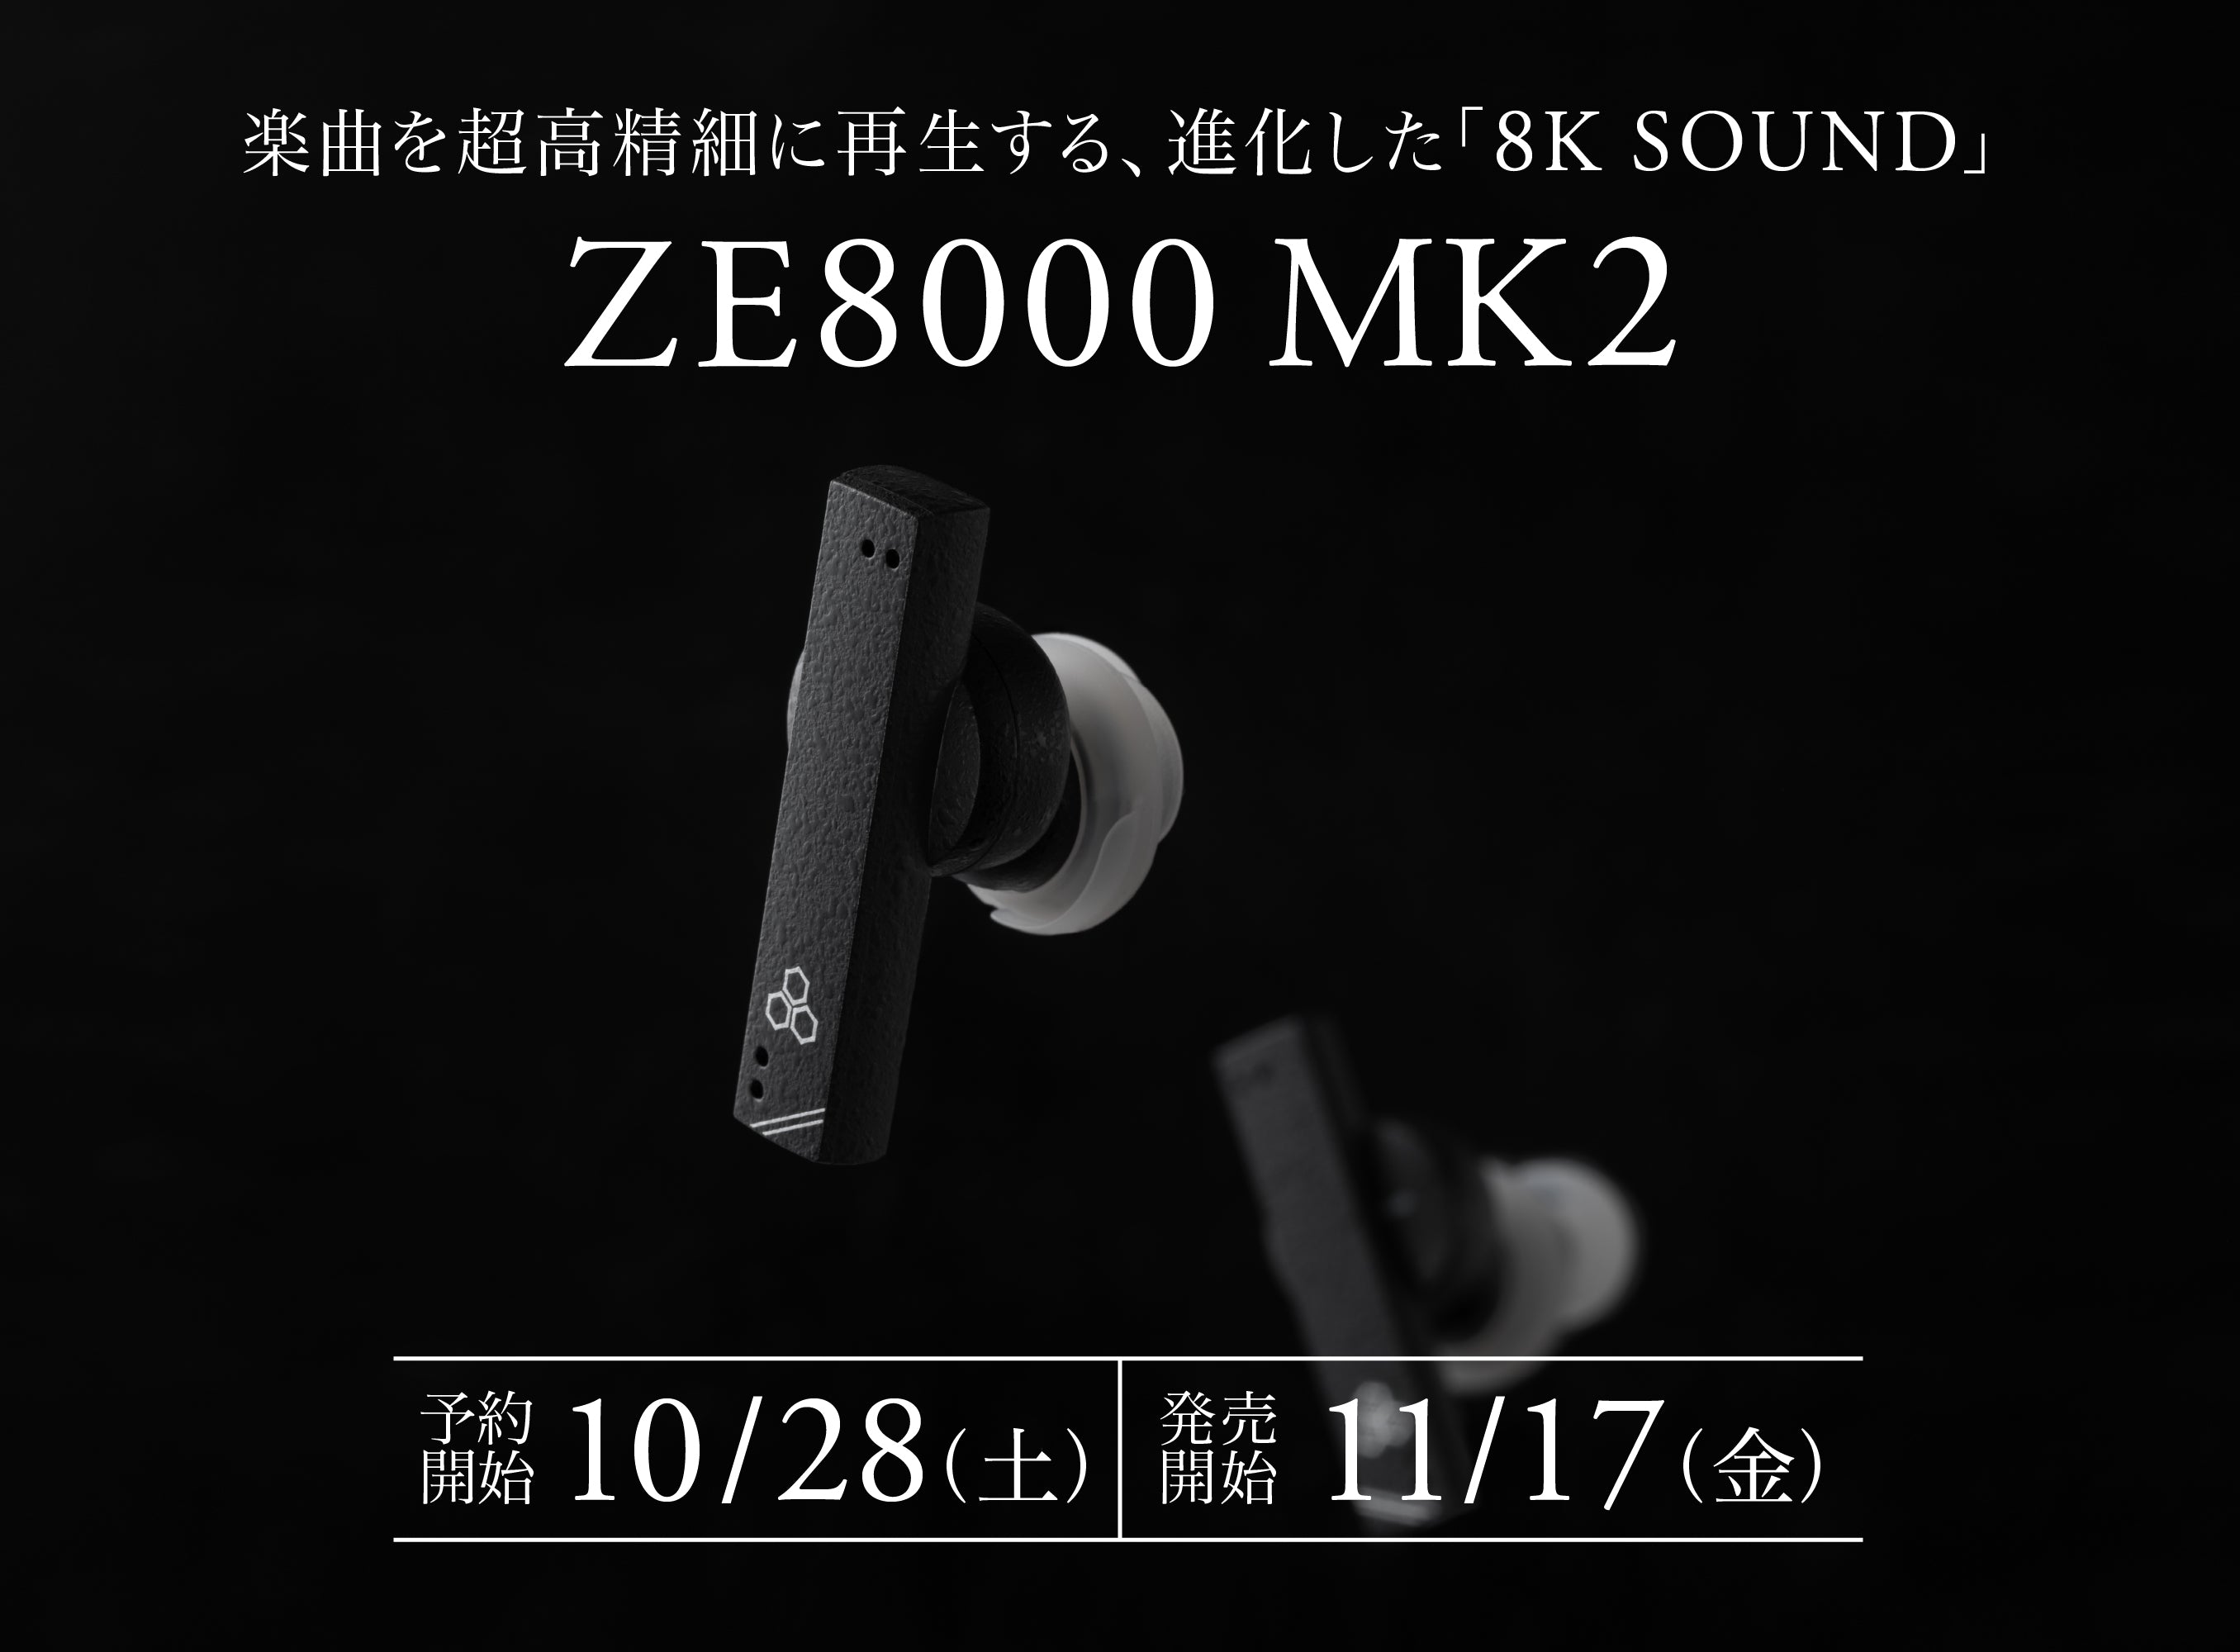 まさに「オーケストラに没入できるイヤホン」！楽曲を超高精細に再現する「8K SOUND」が進化！<br>ワイヤレスイヤホン「ZE8000 MK2」<br>2023年10月28日（土）予約受付開始、11月17日（金）発売開始！　